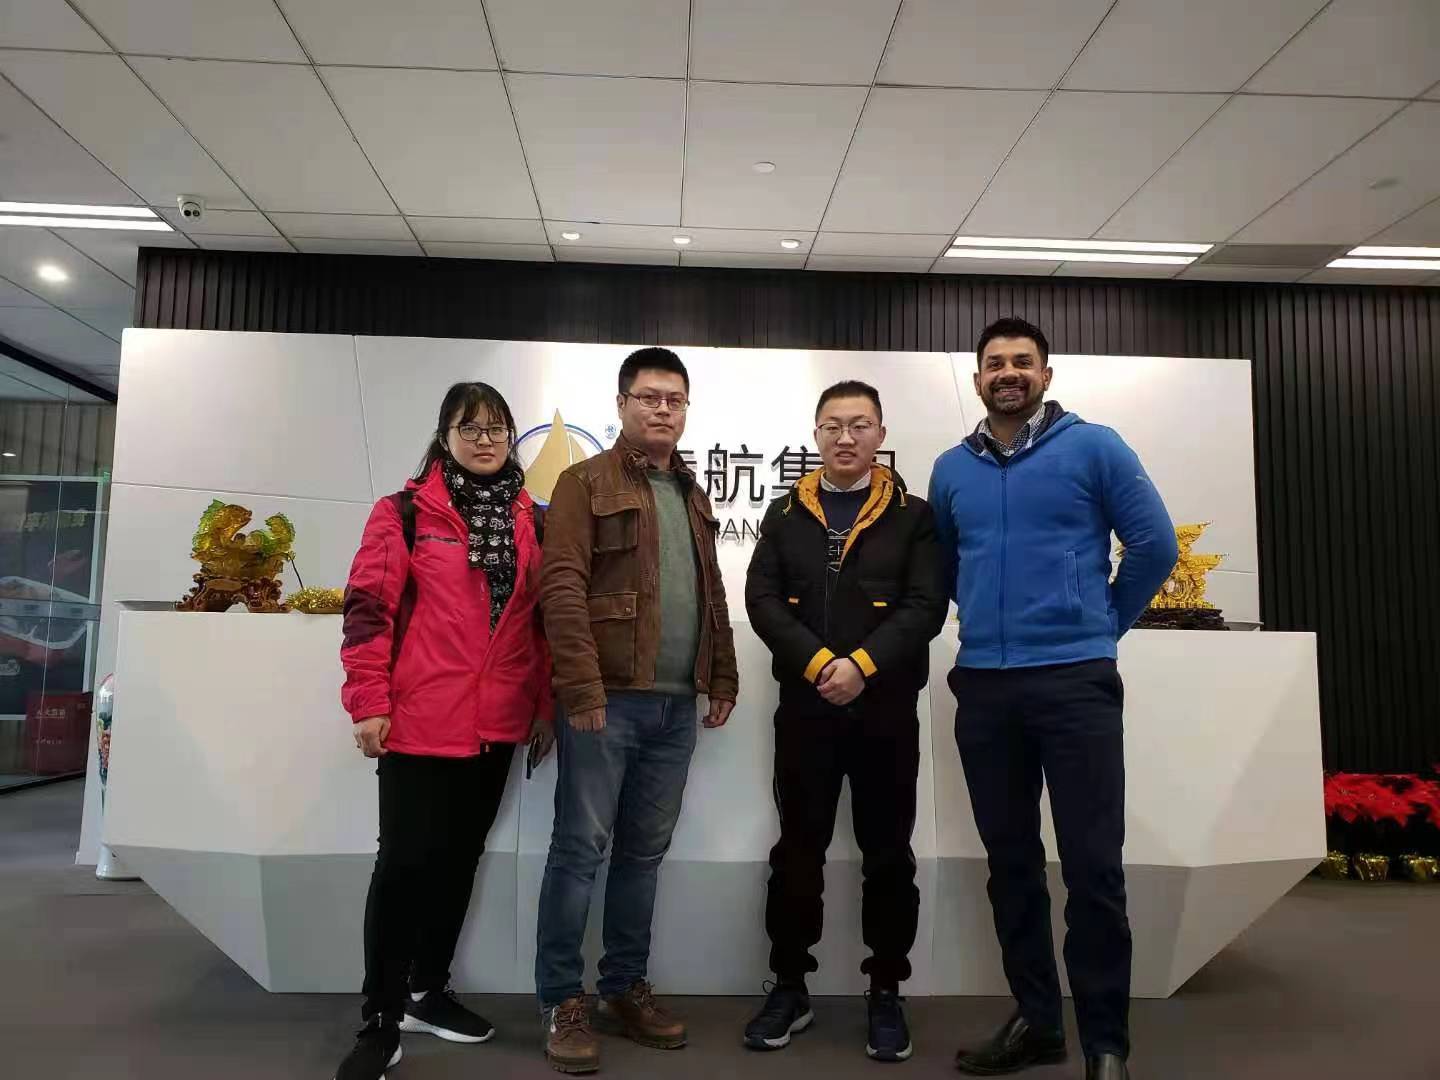 China Open Entry, Herr Layne besuchte unser Unternehmen